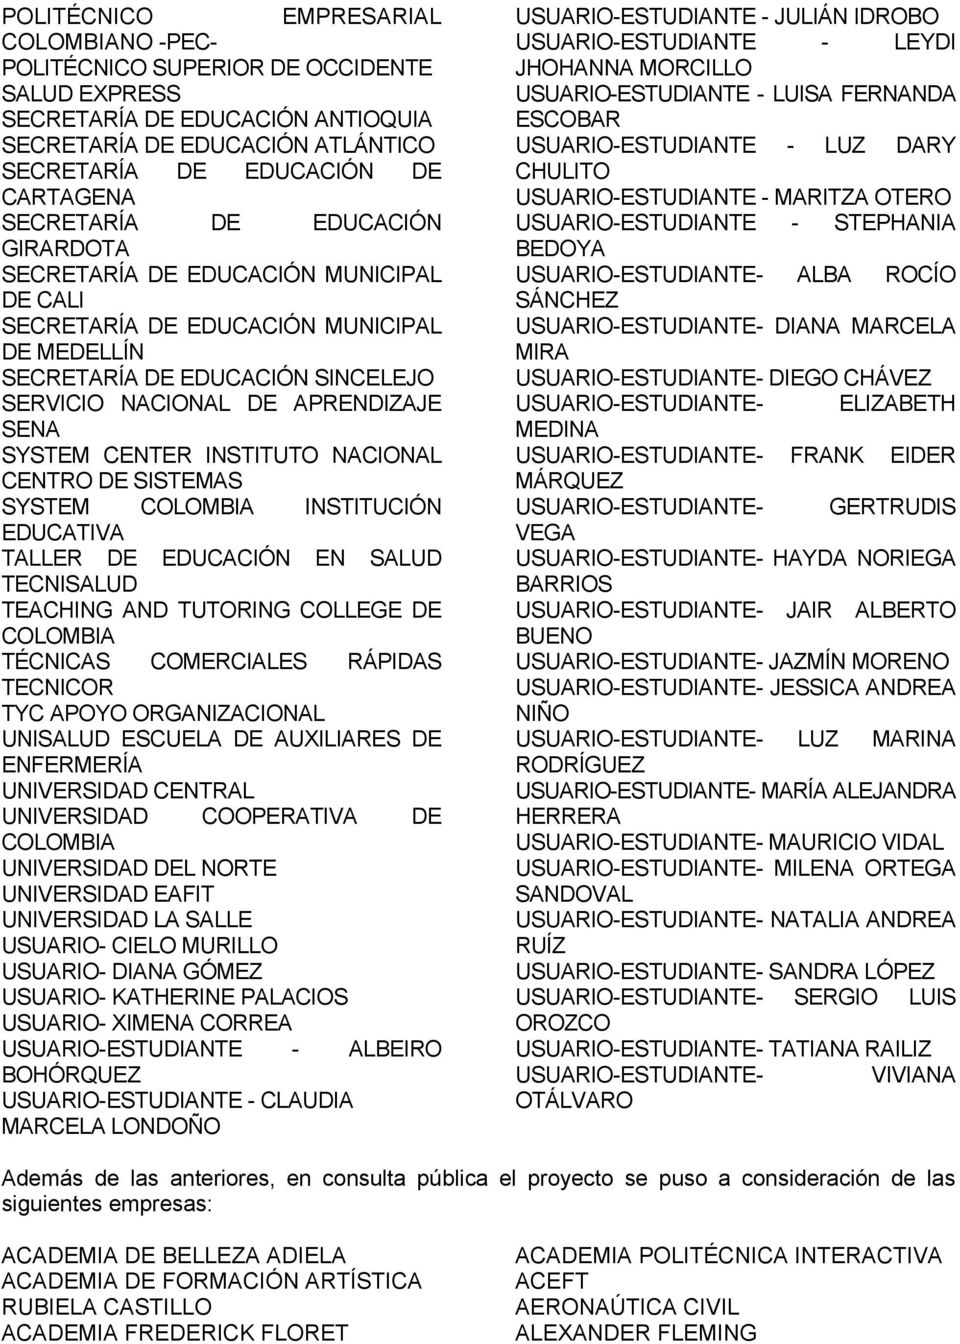 NACIONAL CENTRO DE SISTEMAS SYSTEM COLOMBIA INSTITUCIÓN EDUCATIVA TALLER DE EDUCACIÓN EN SALUD TECNISALUD TEACHING AND TUTORING COLLEGE DE COLOMBIA TÉCNICAS COMERCIALES RÁPIDAS TECNICOR TYC APOYO